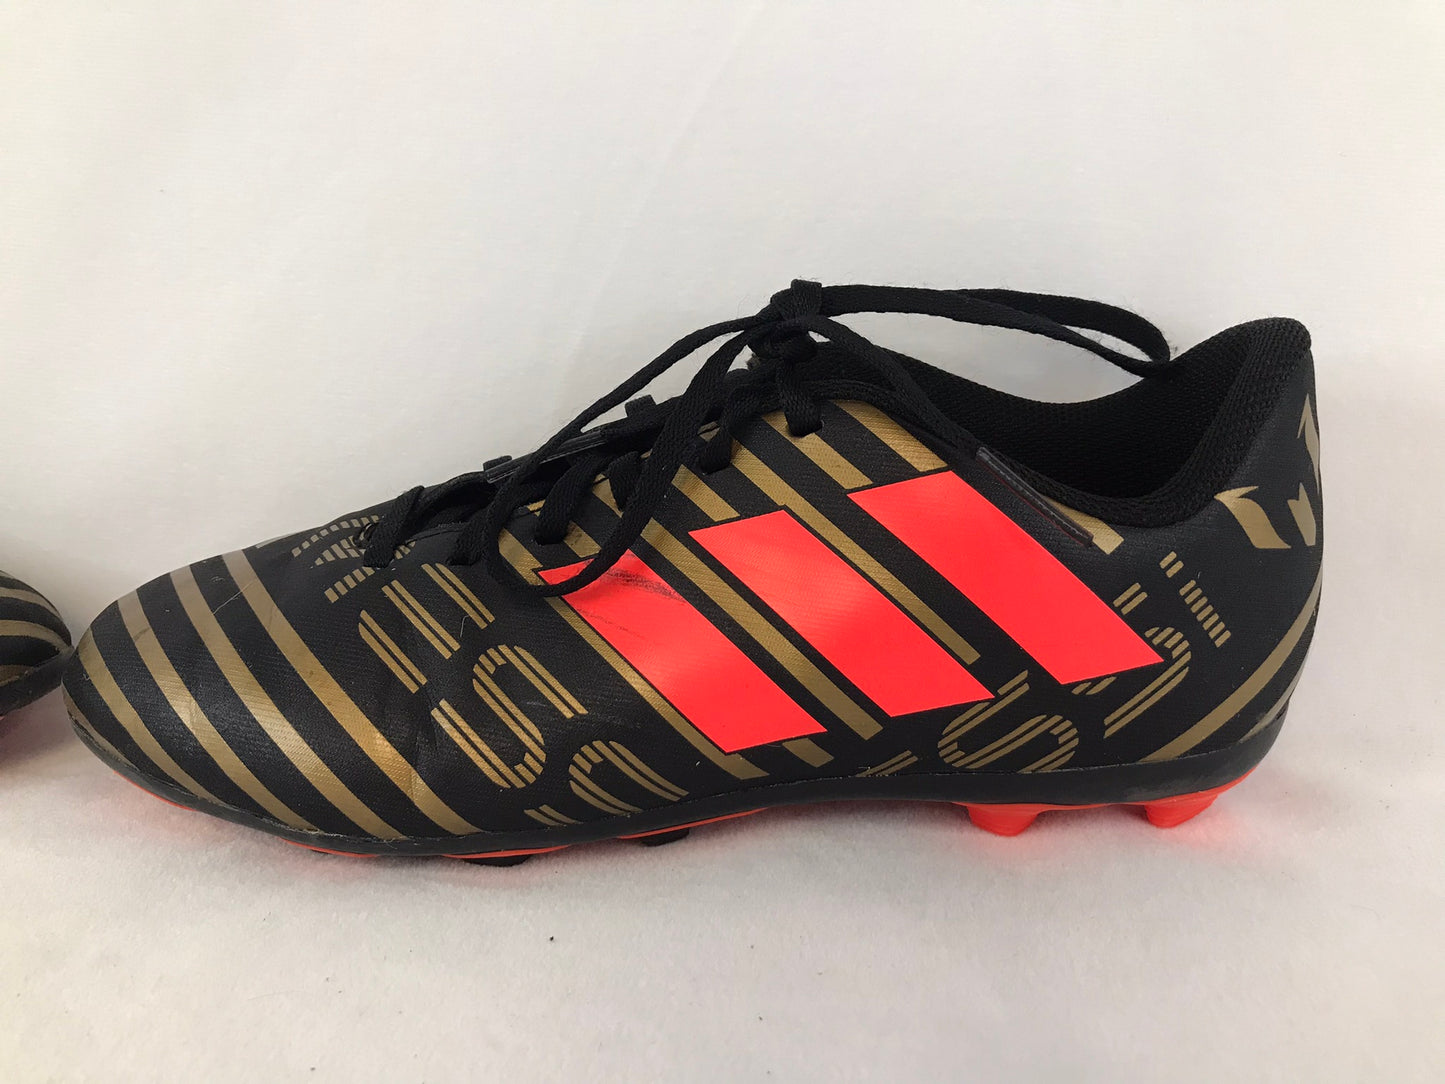 Soccer Shoes Cleats Child Size 5.5 Youth  Adidas Nemezziz Black Gold Orange